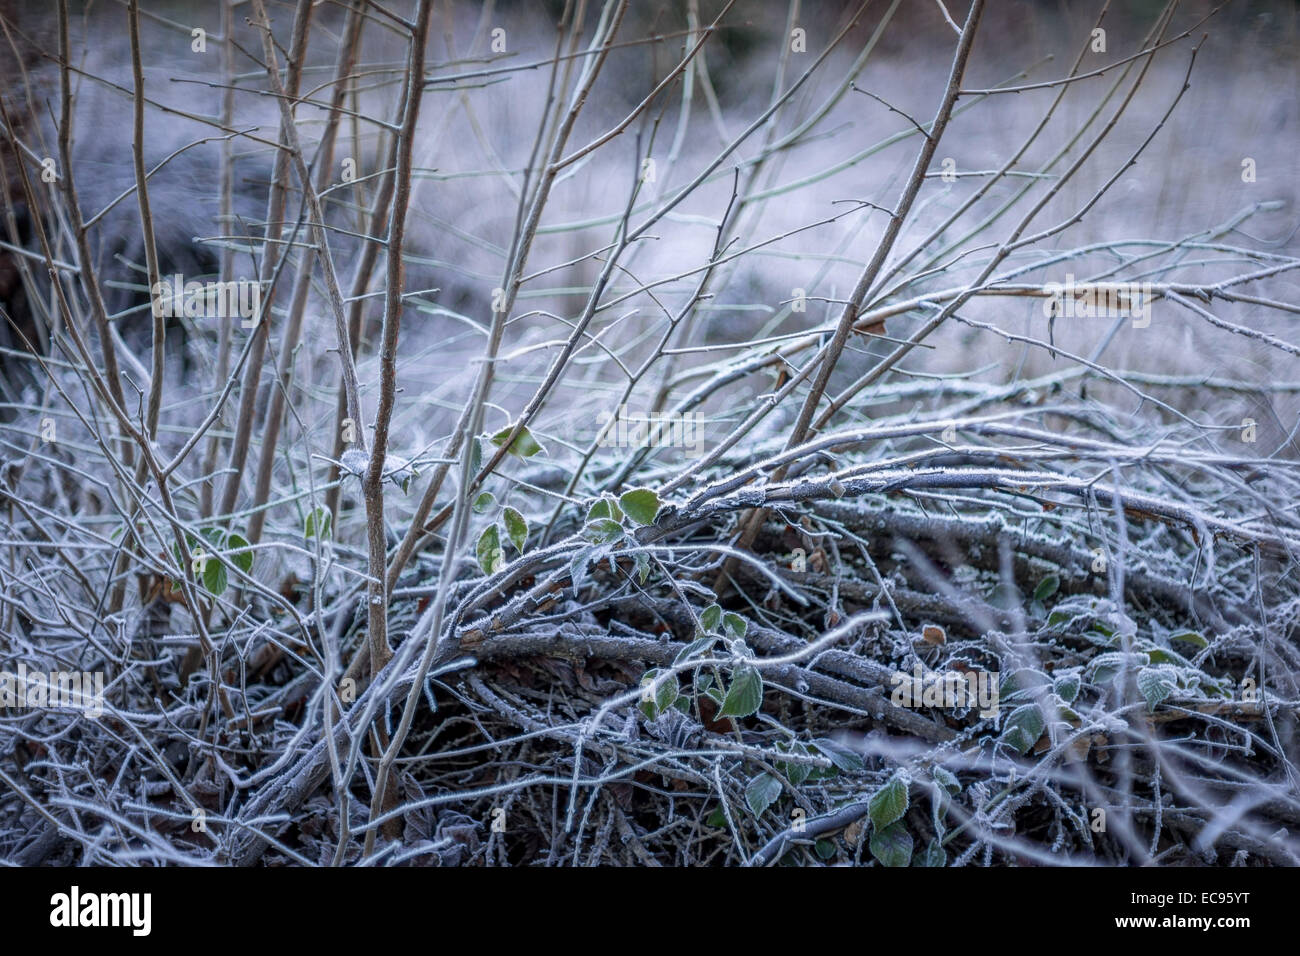 Deshojado congelados bush cubierta de hielo fresco frío invierno frío Foto de stock